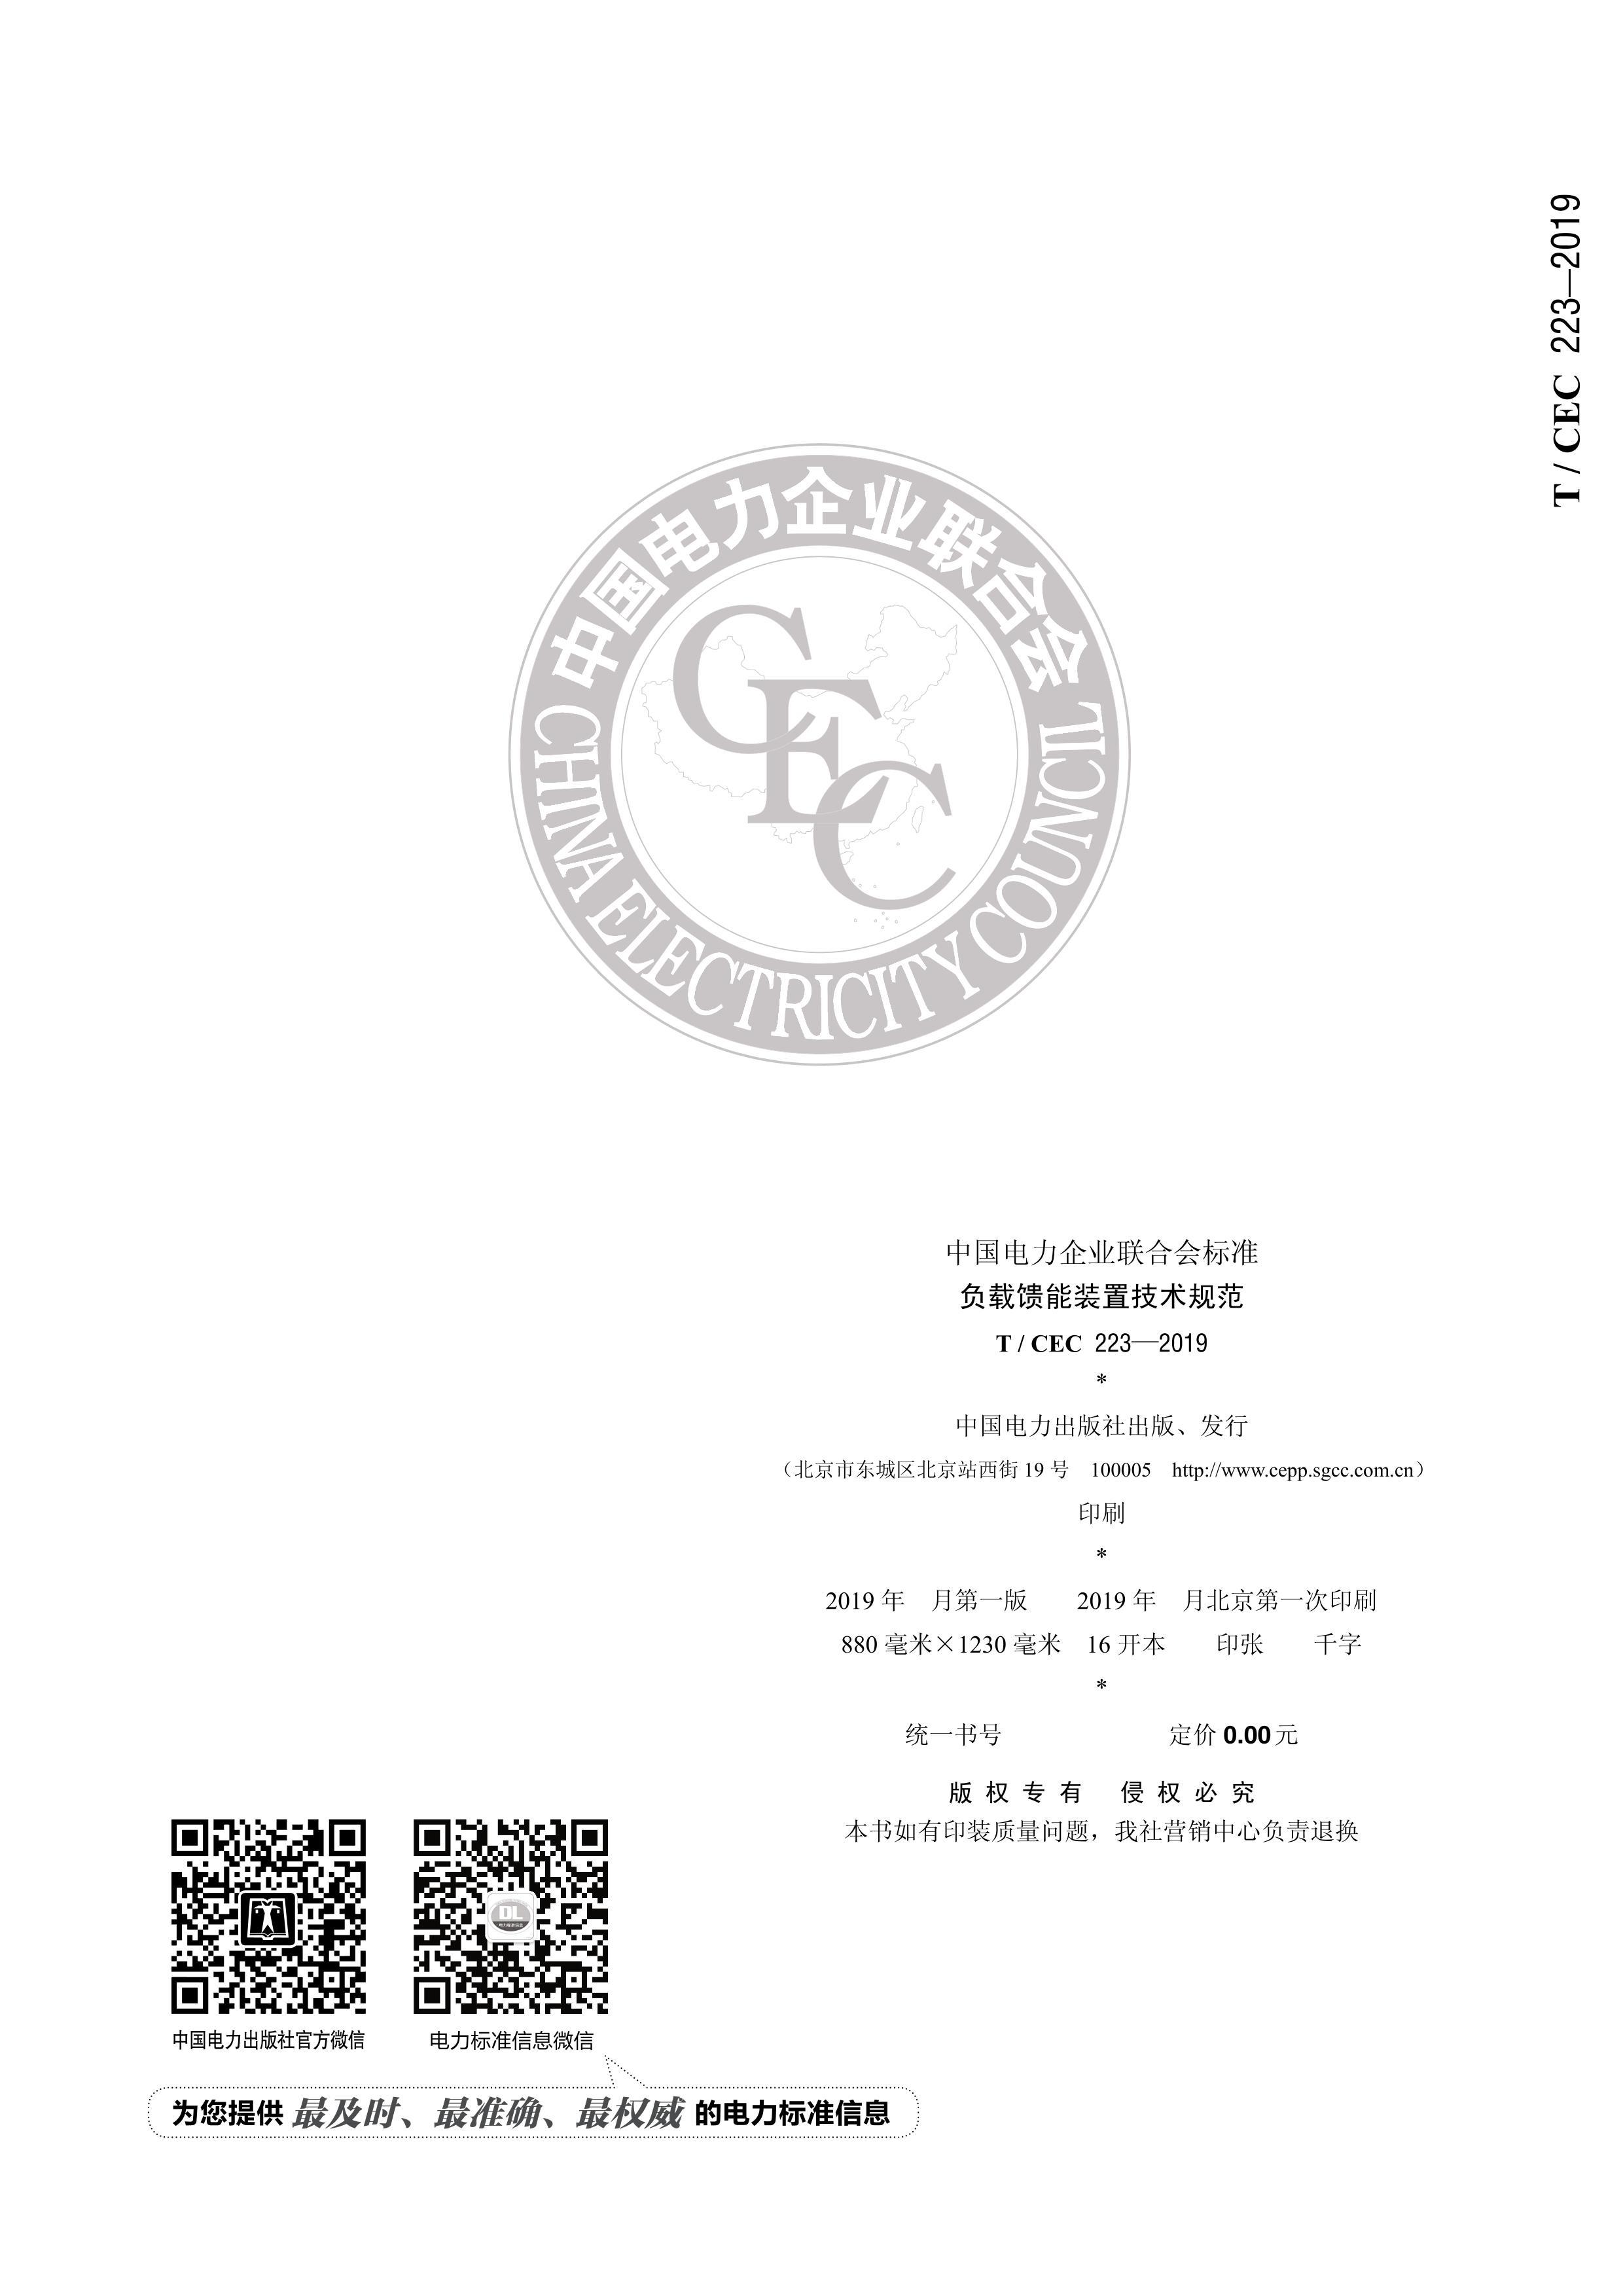 TCEC 223-2019 װü淶.pdf2ҳ